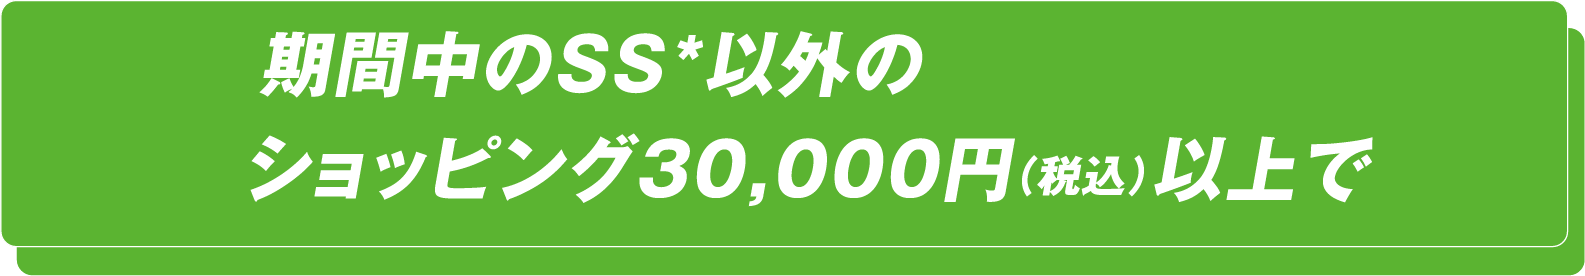 期間中のSS以外のショッピング30,000円以上で2円/ℓ引き